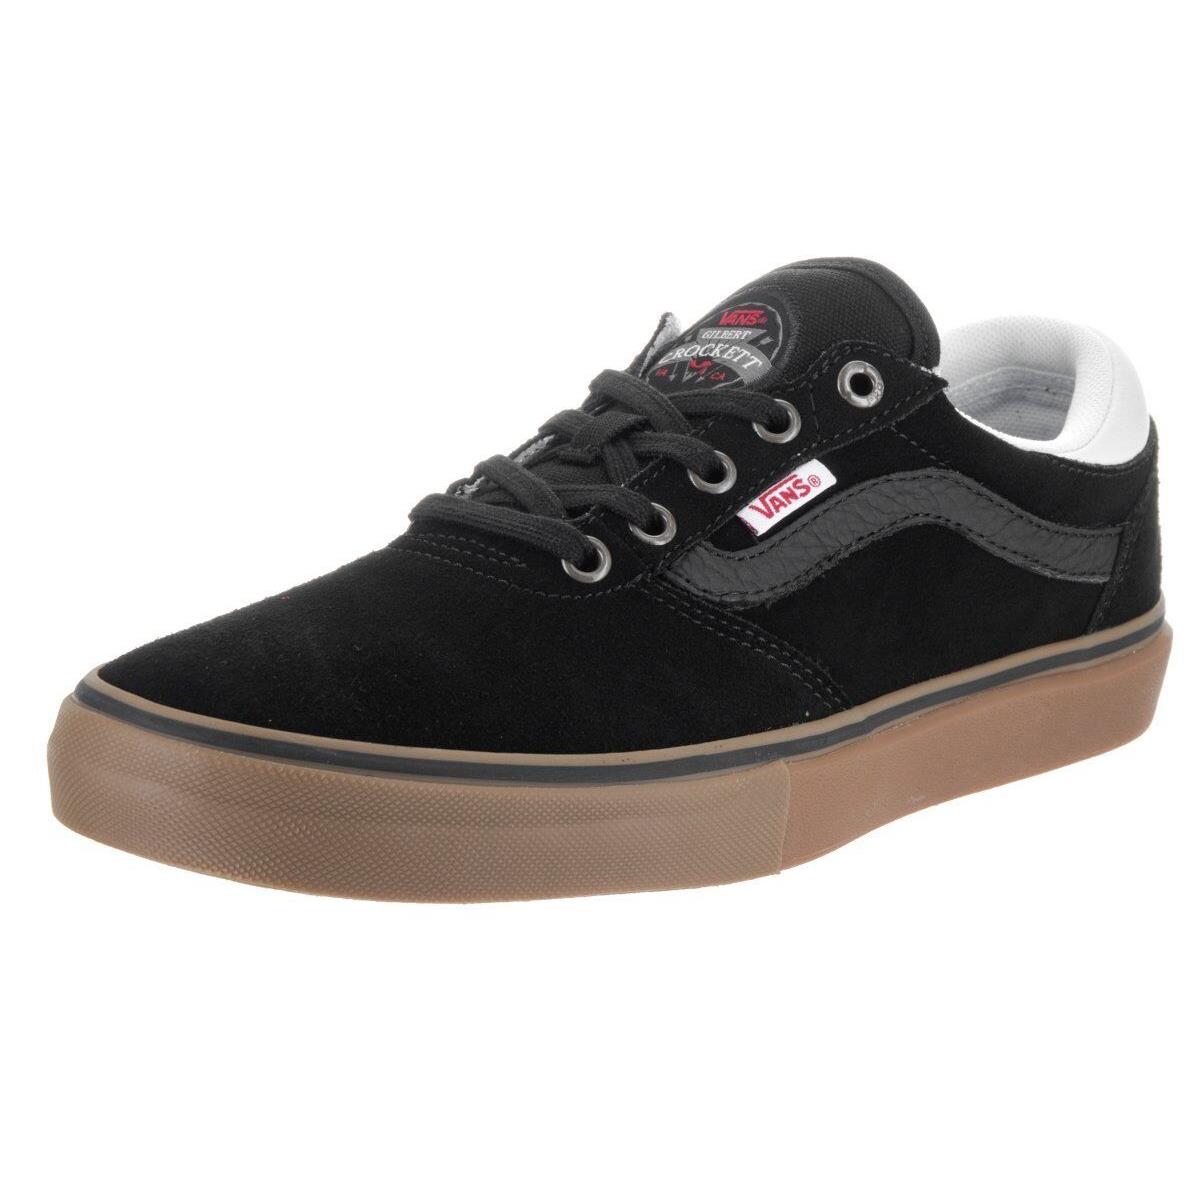 Vans Gilbert Crockett Black White Gum Mens Skate Shoes 6.5 Womens 8 - Black